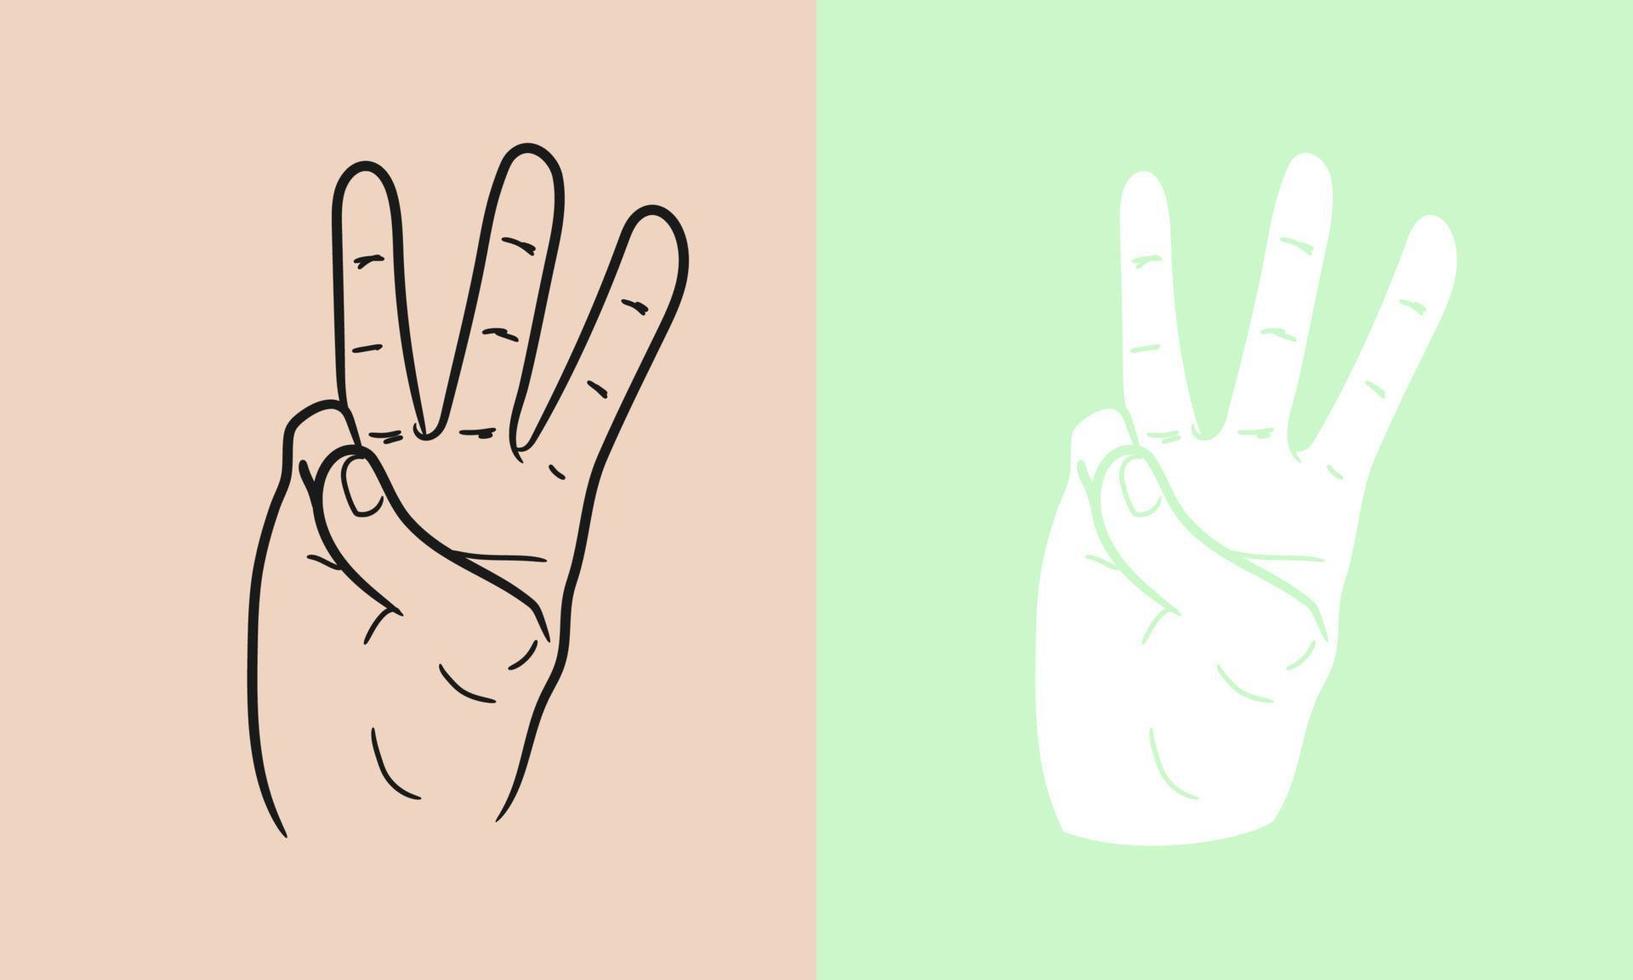 modèle d'illustration vectorielle de trois doigts de gestes de la main. dessin au trait geste réaliste de la main humaine. isolé sur fond. vecteur eps 10.